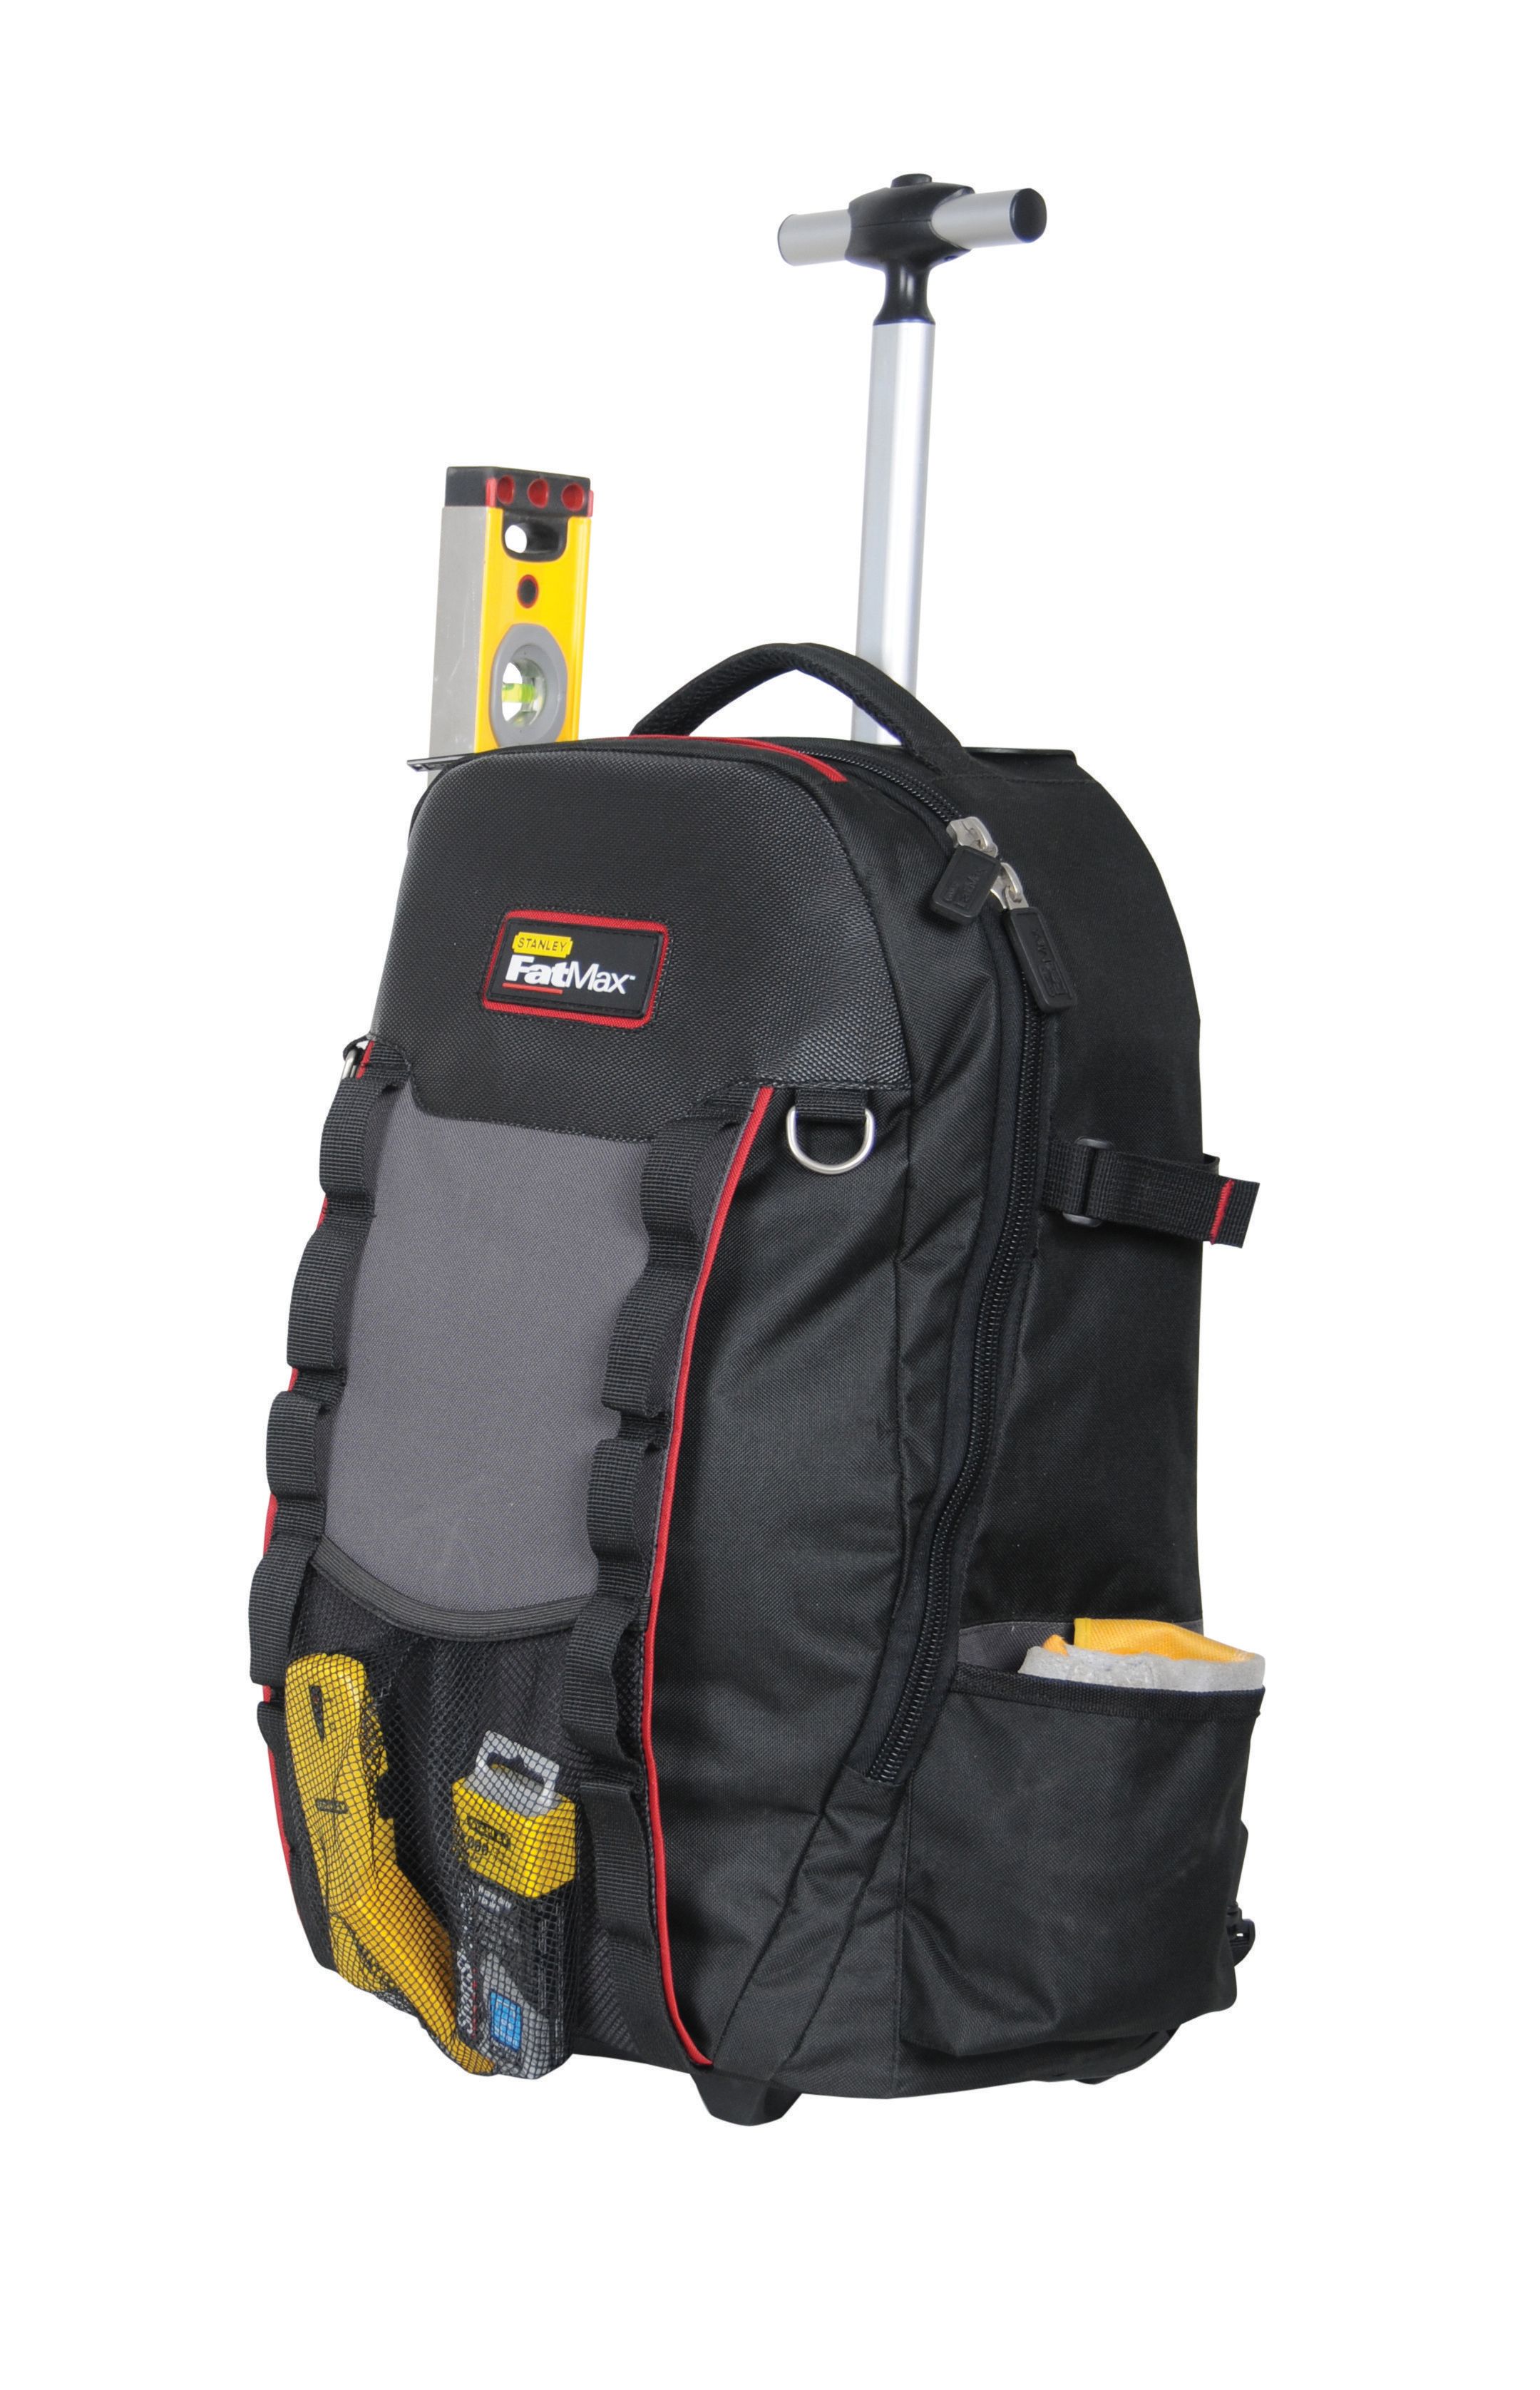 Stanley 1-79-215 FatMax Backpack on Wheels